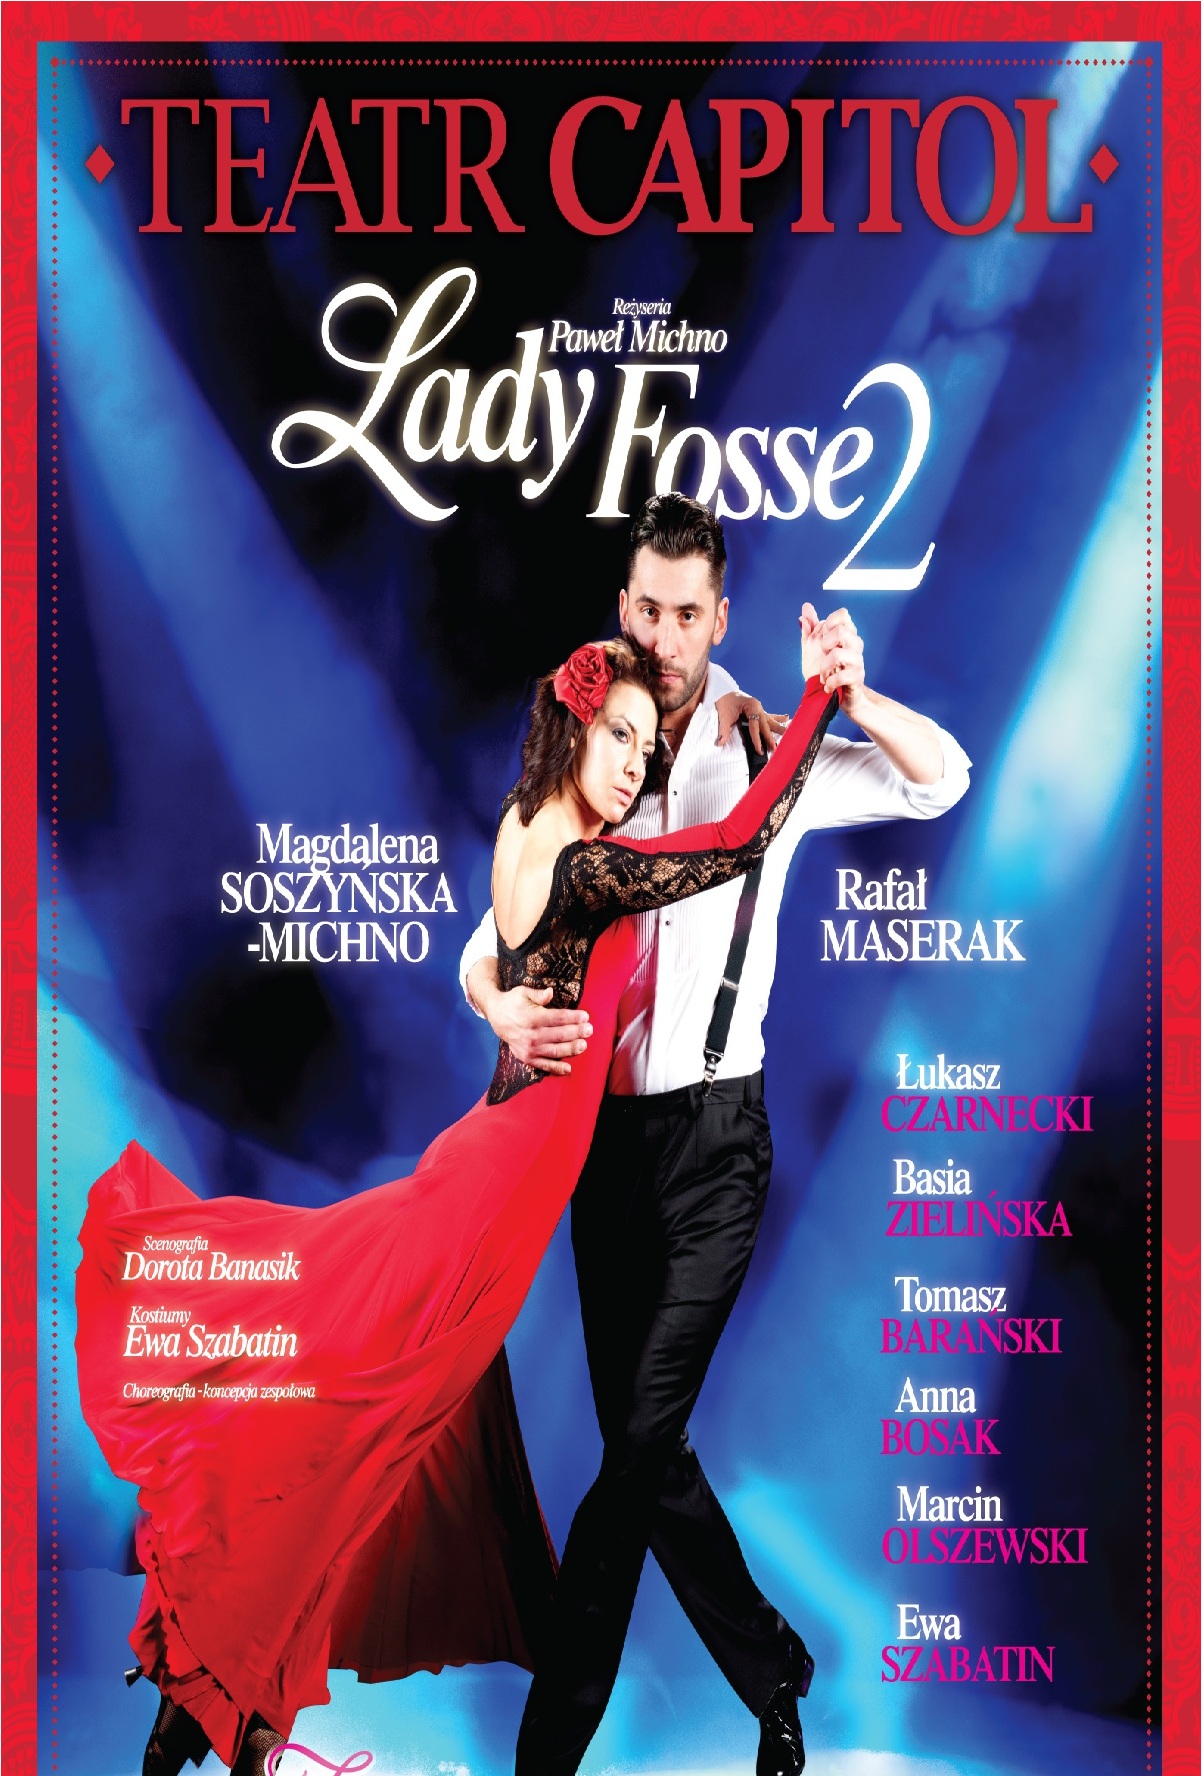 Lady Fosse 2 w Teatrze Capitol plakat (źródło: materiał prasowy Teatru Capitol)